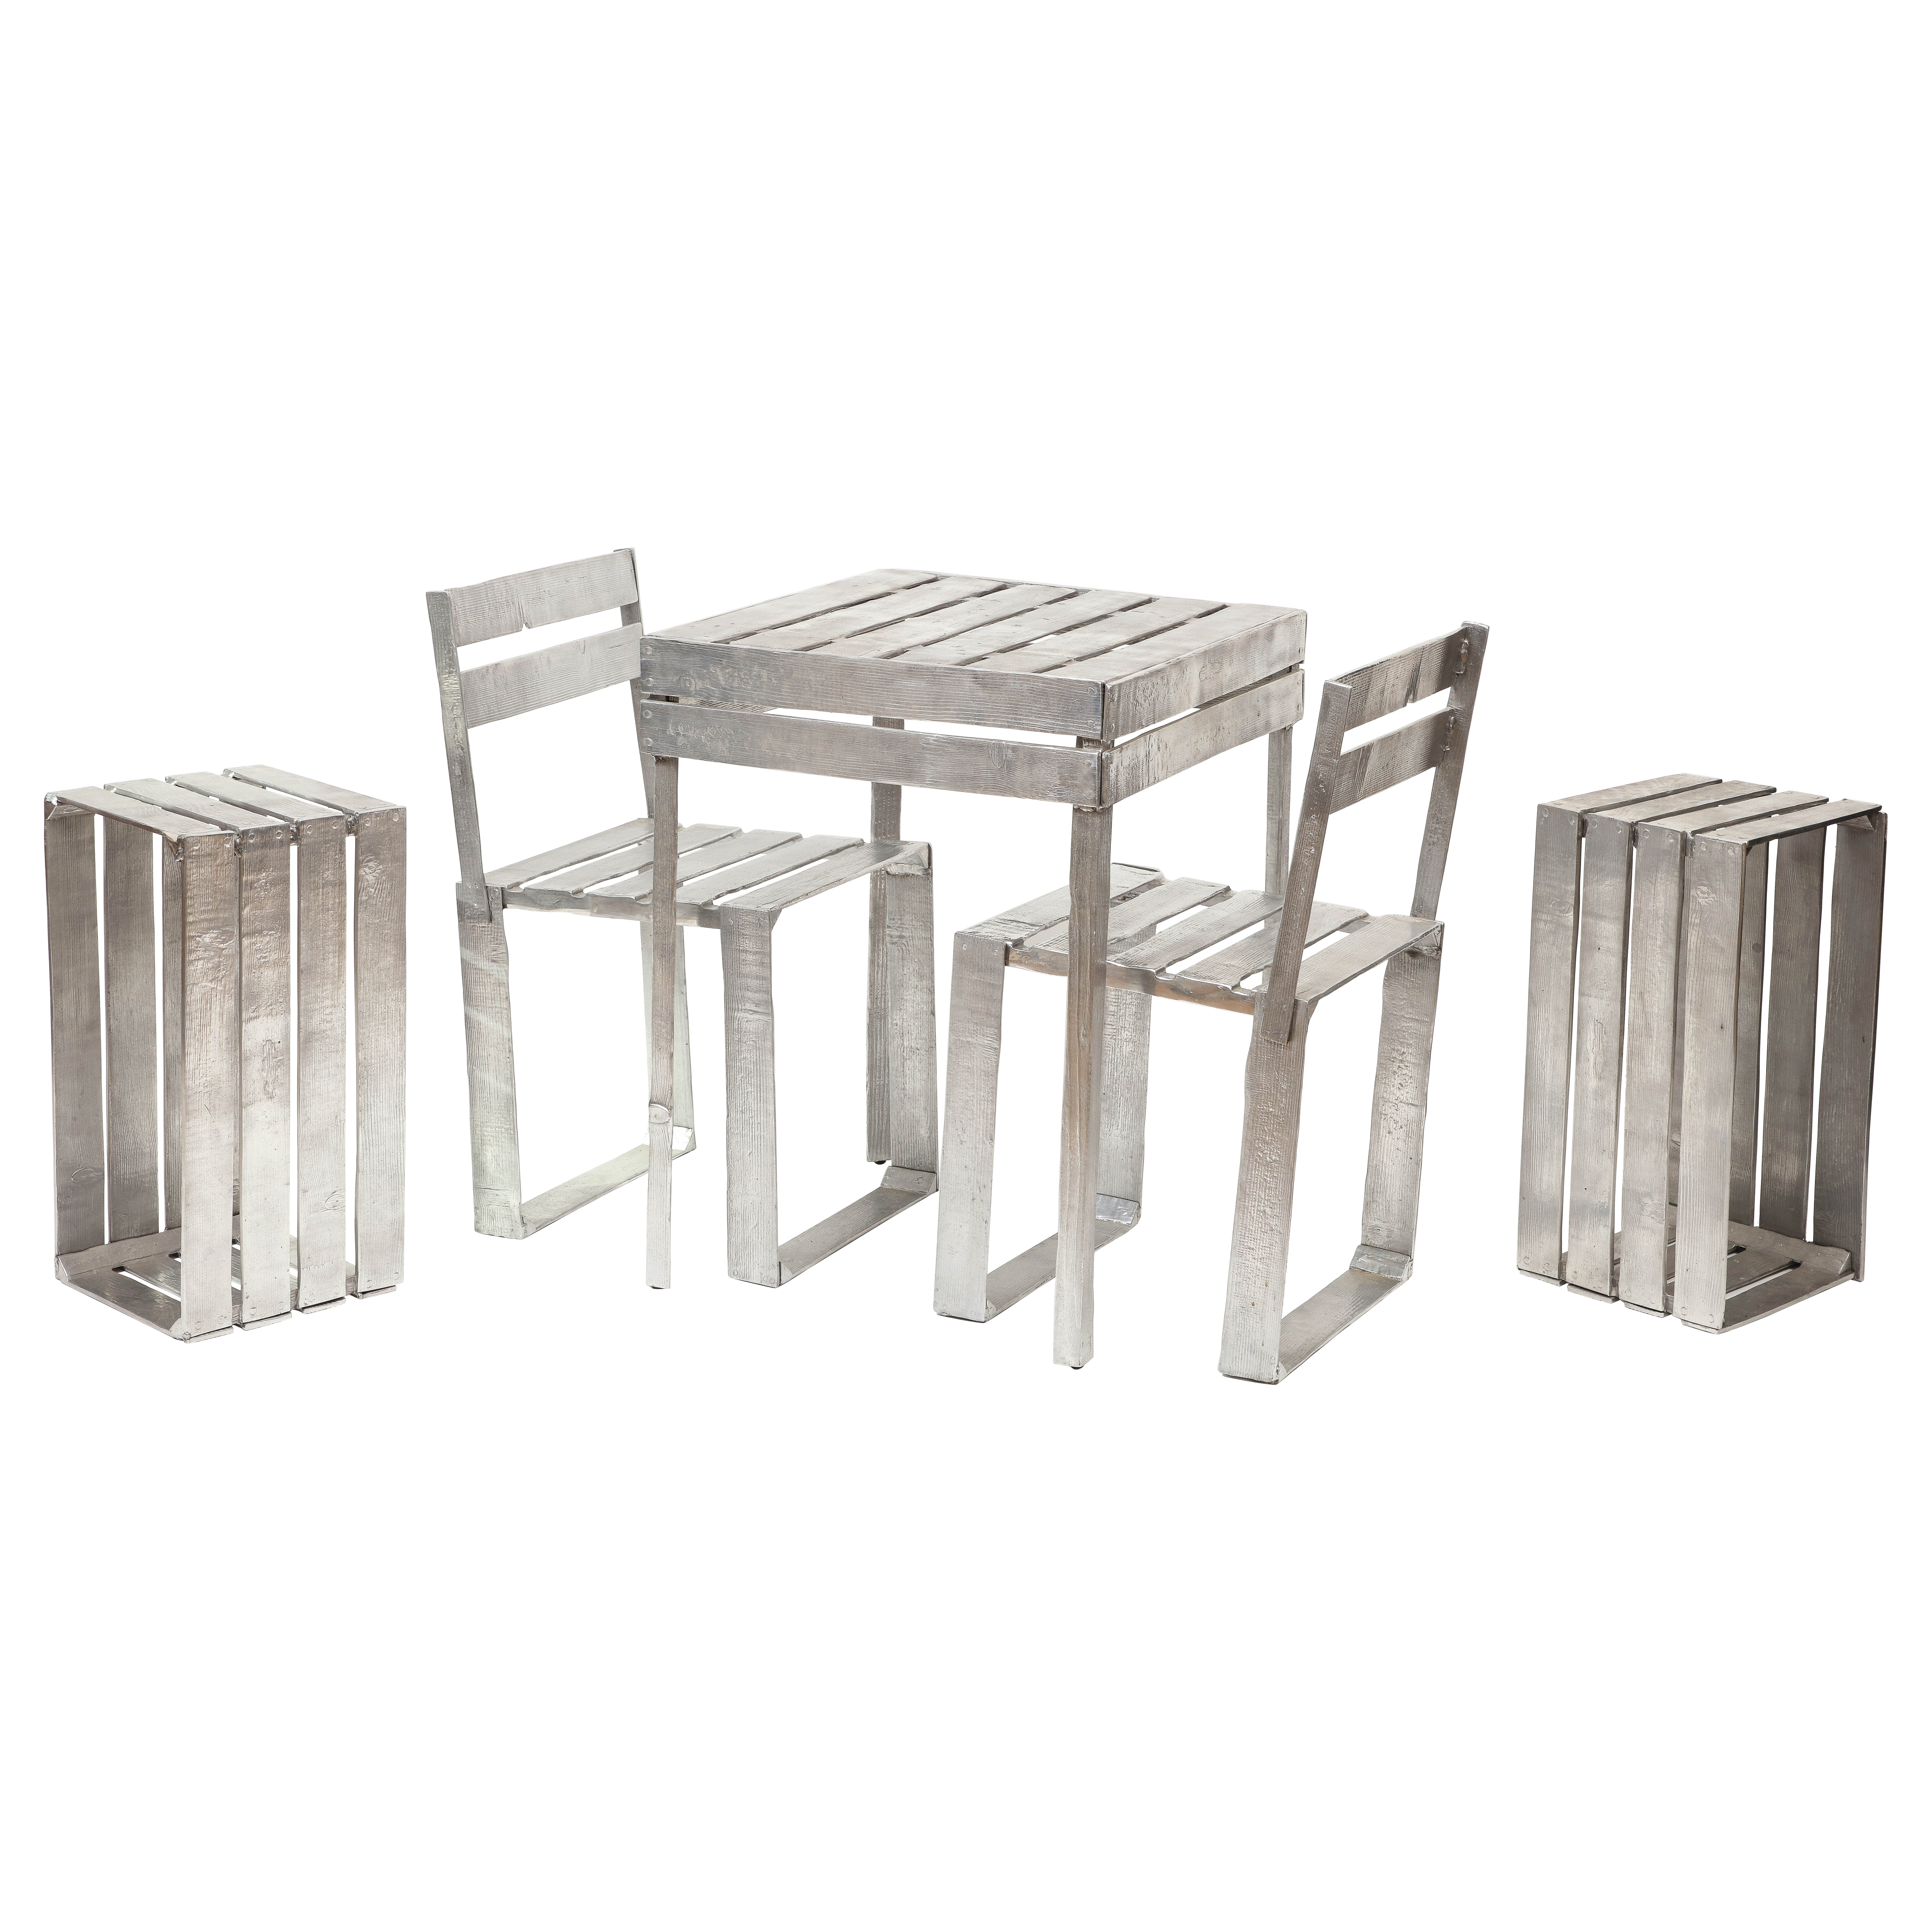 Andrea Salvetti Silver Cast Aluminum Chair and Table Set, "Sedia Ortofrutta"